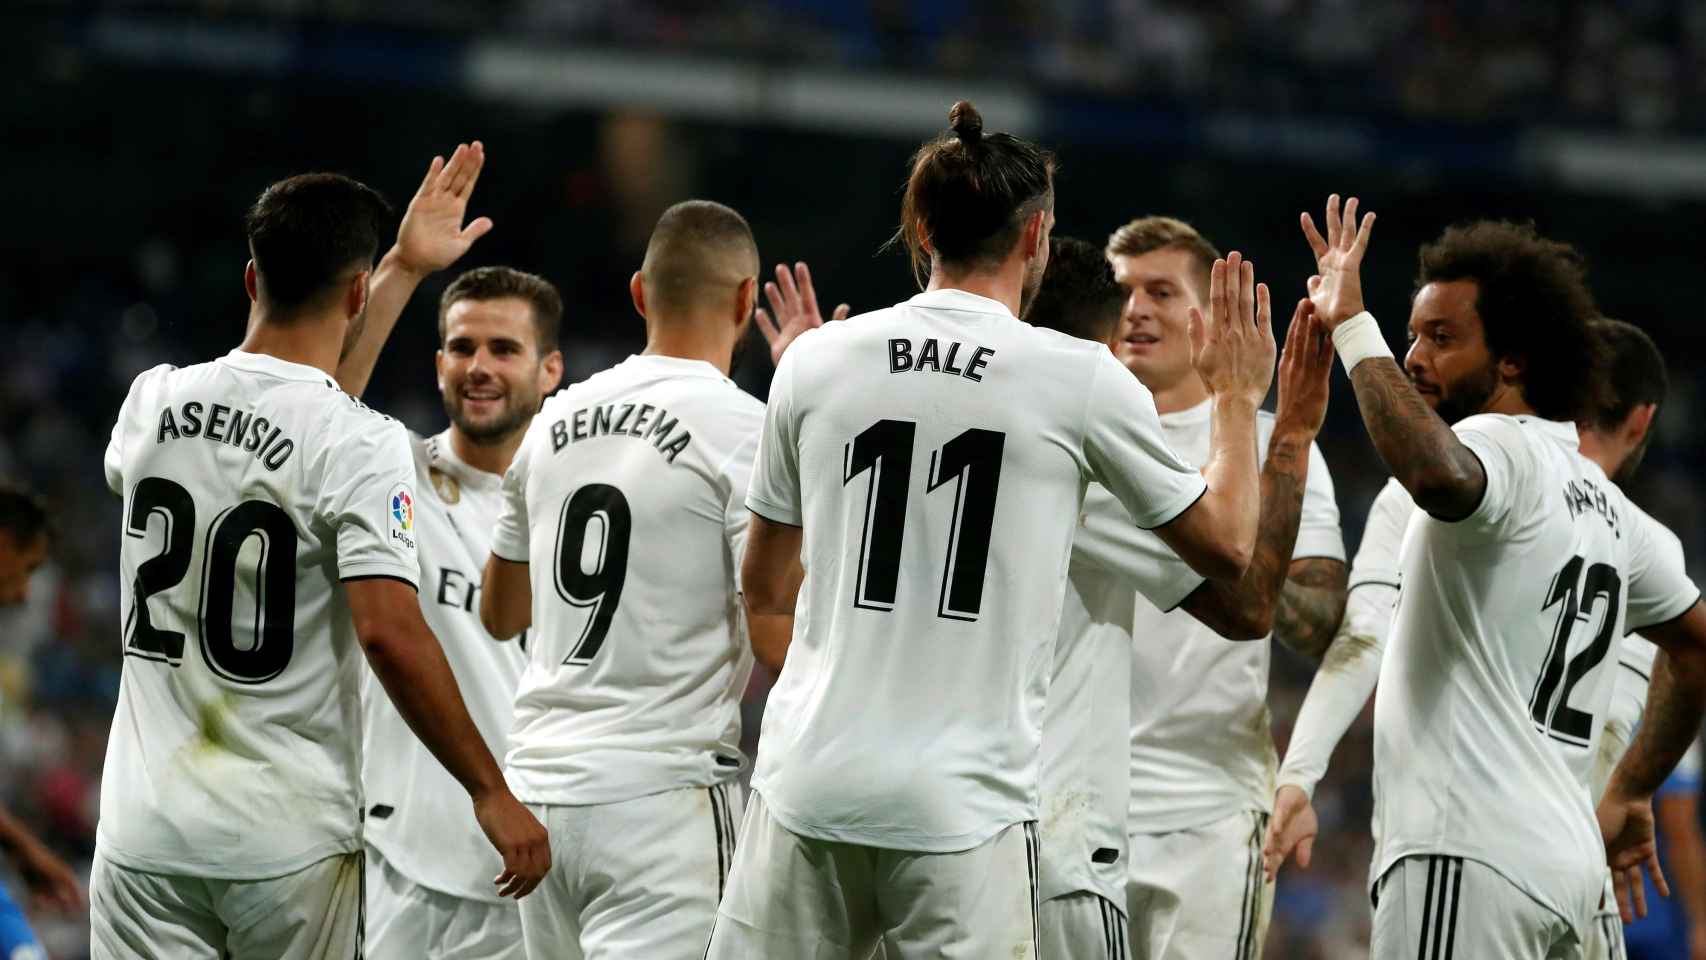 Los jugadores del Real Madrid celebrando un gol ante el Getafe